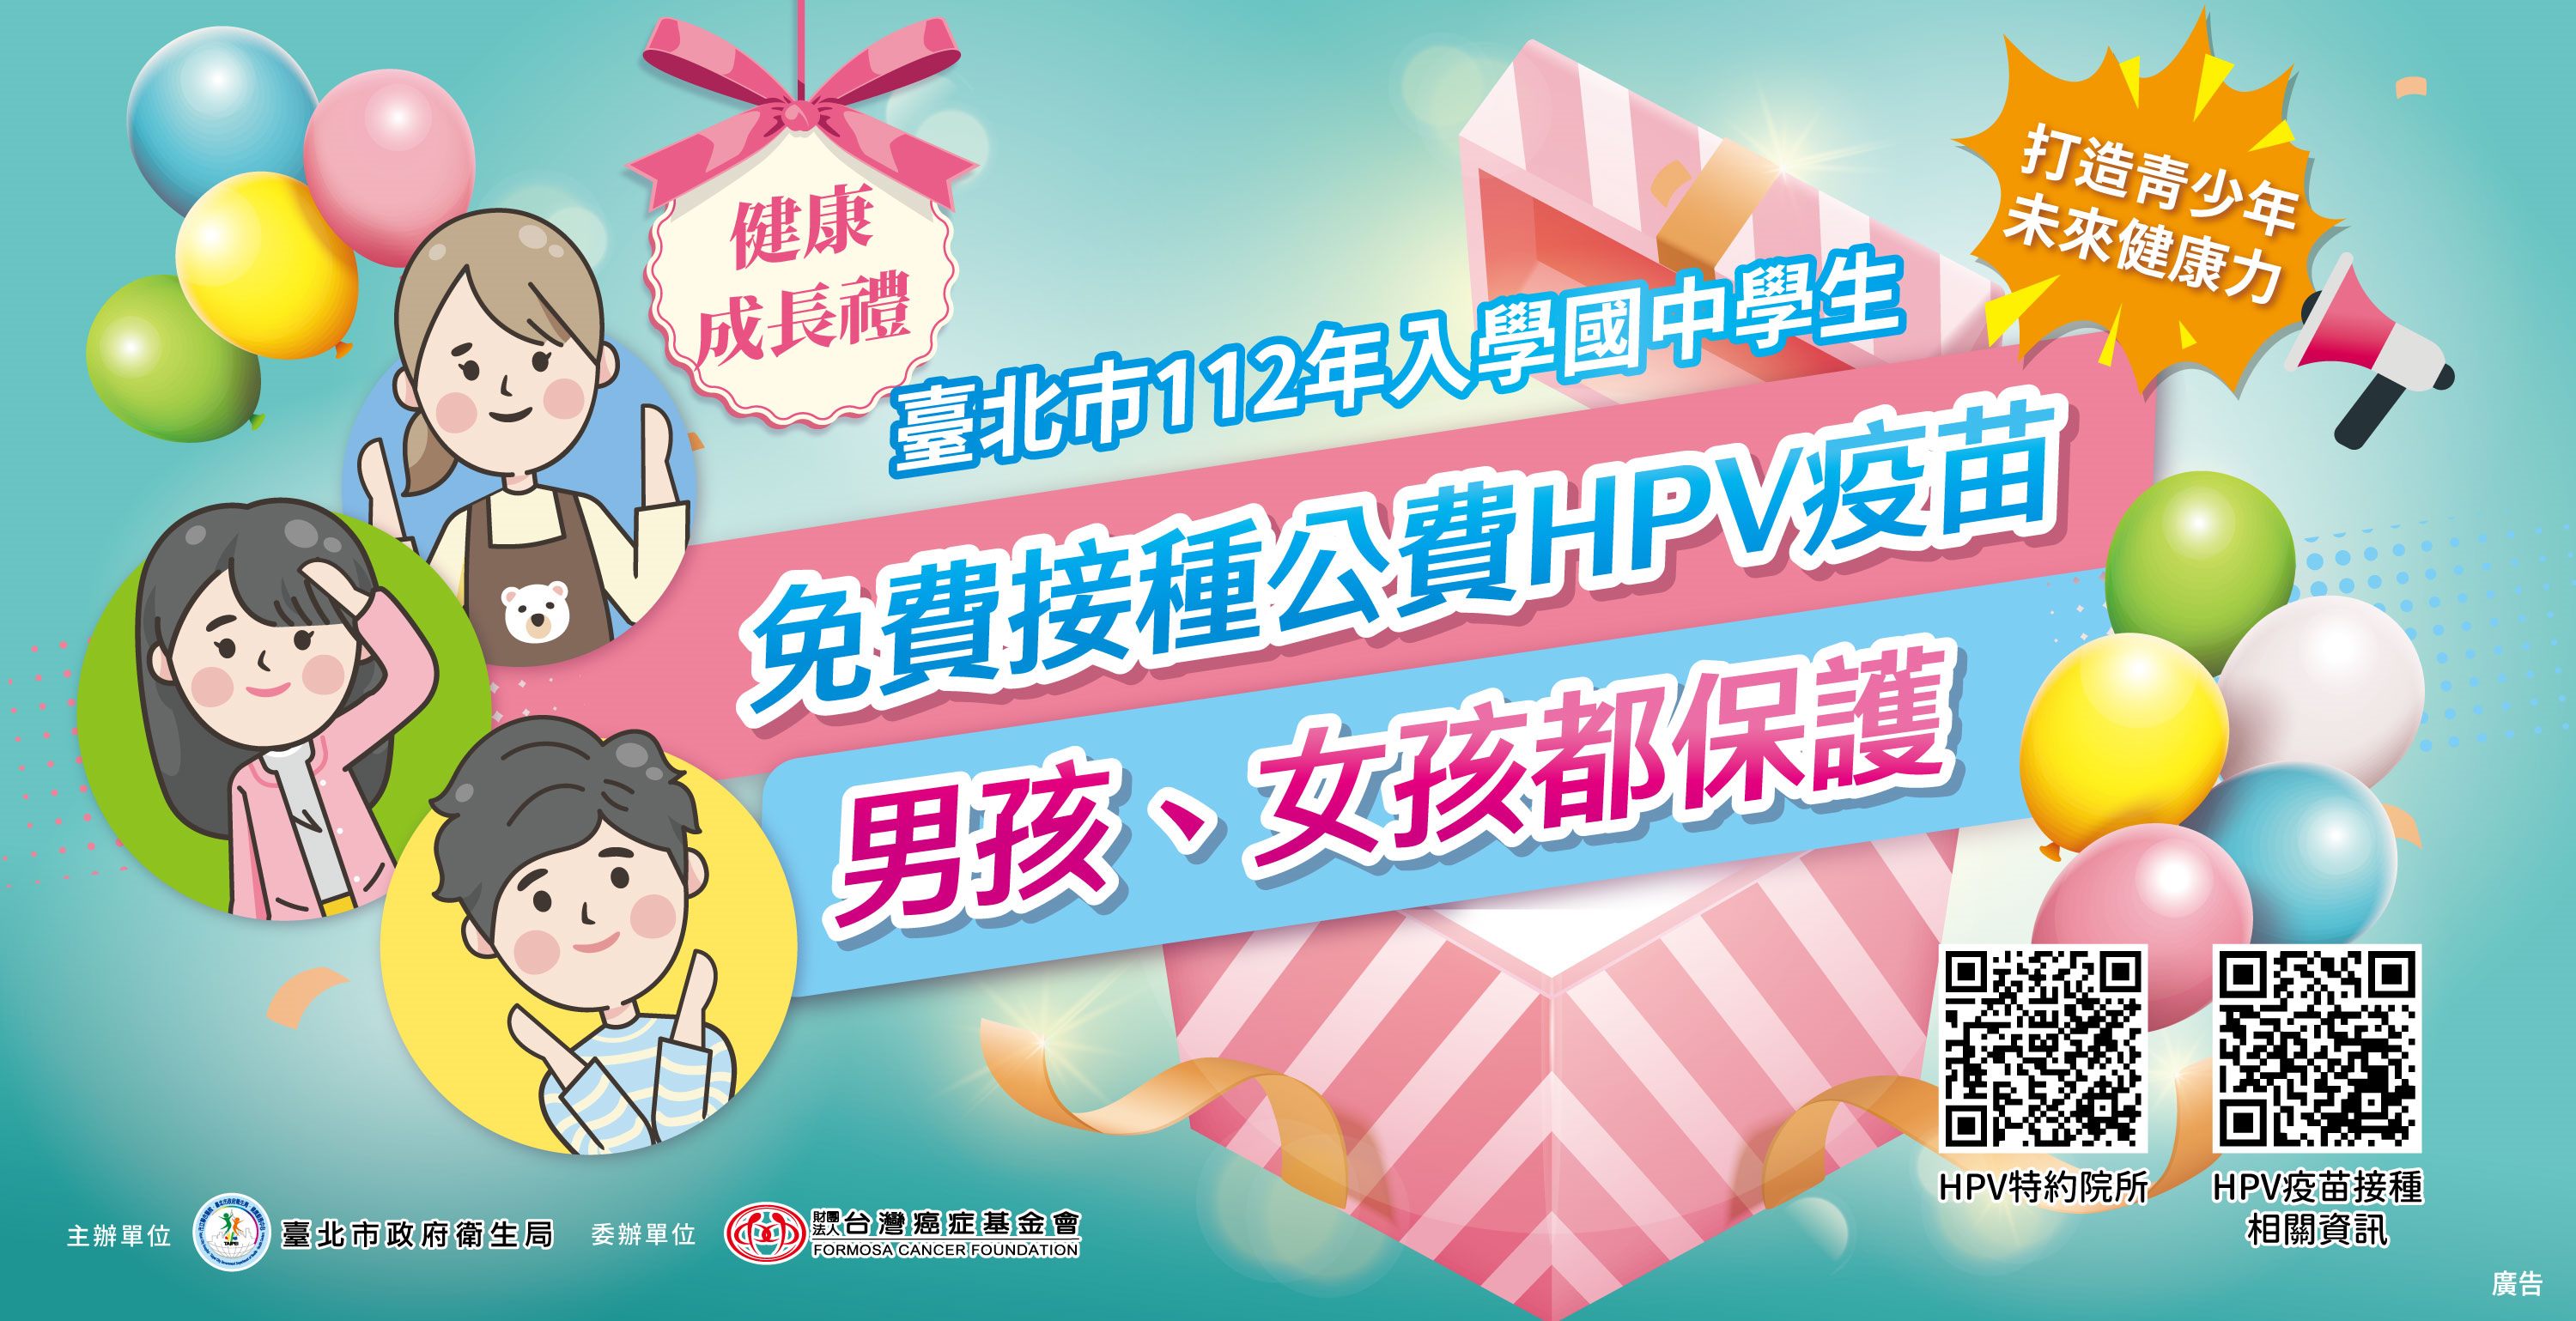 臺北市112年入學國中學生免費接種公費HPV疫苗